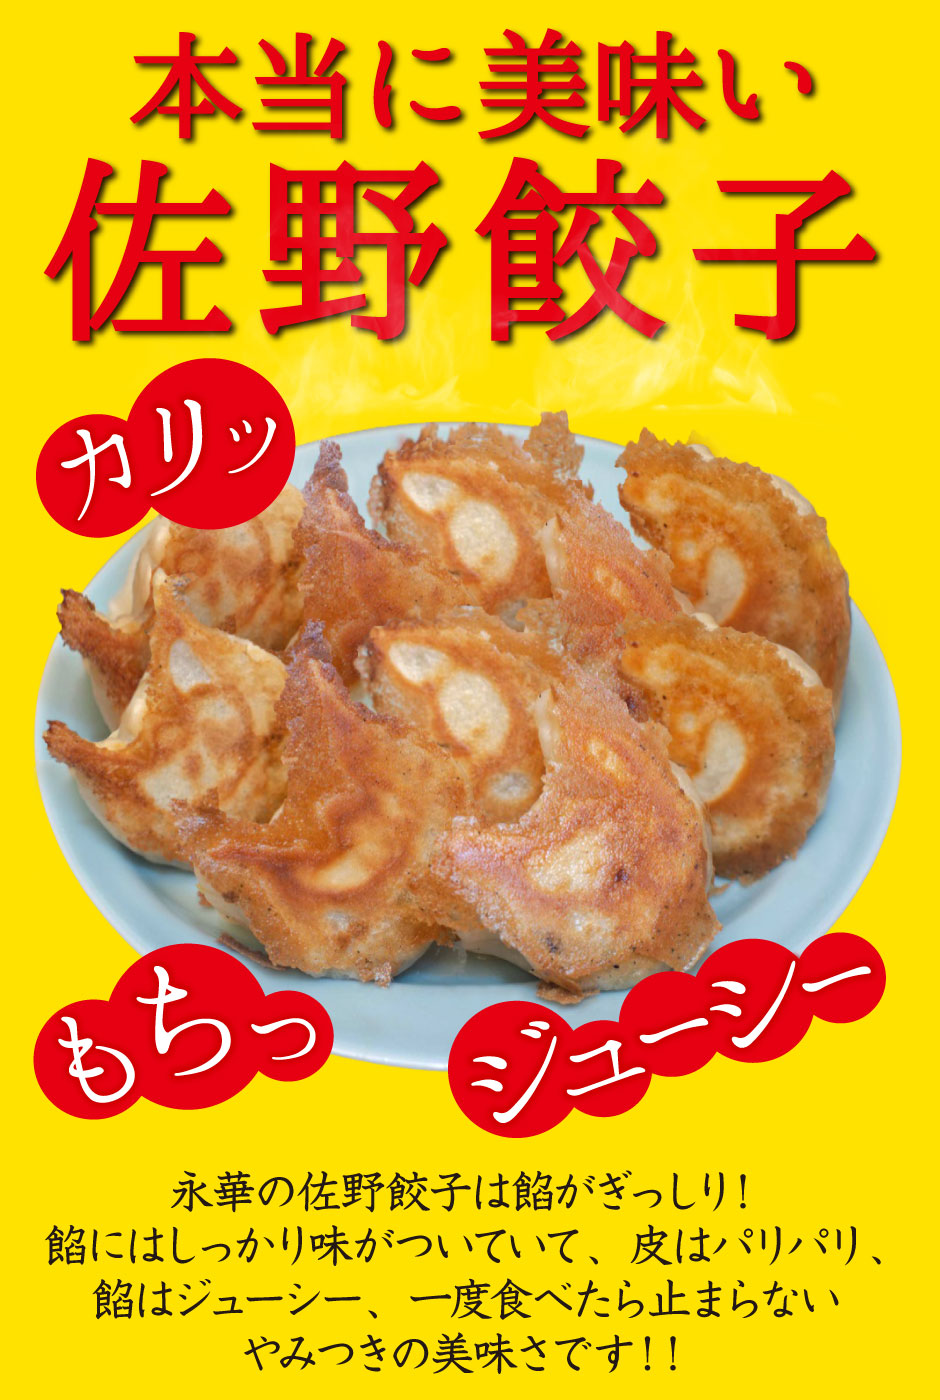 本当に美味い佐野餃子。永華の佐野餃子は餡がぎっしり！餡にはしっかり味がついていて、皮はパリパリ、餡はジューシー、一度食べたら止まらないやみつきの美味さです！！